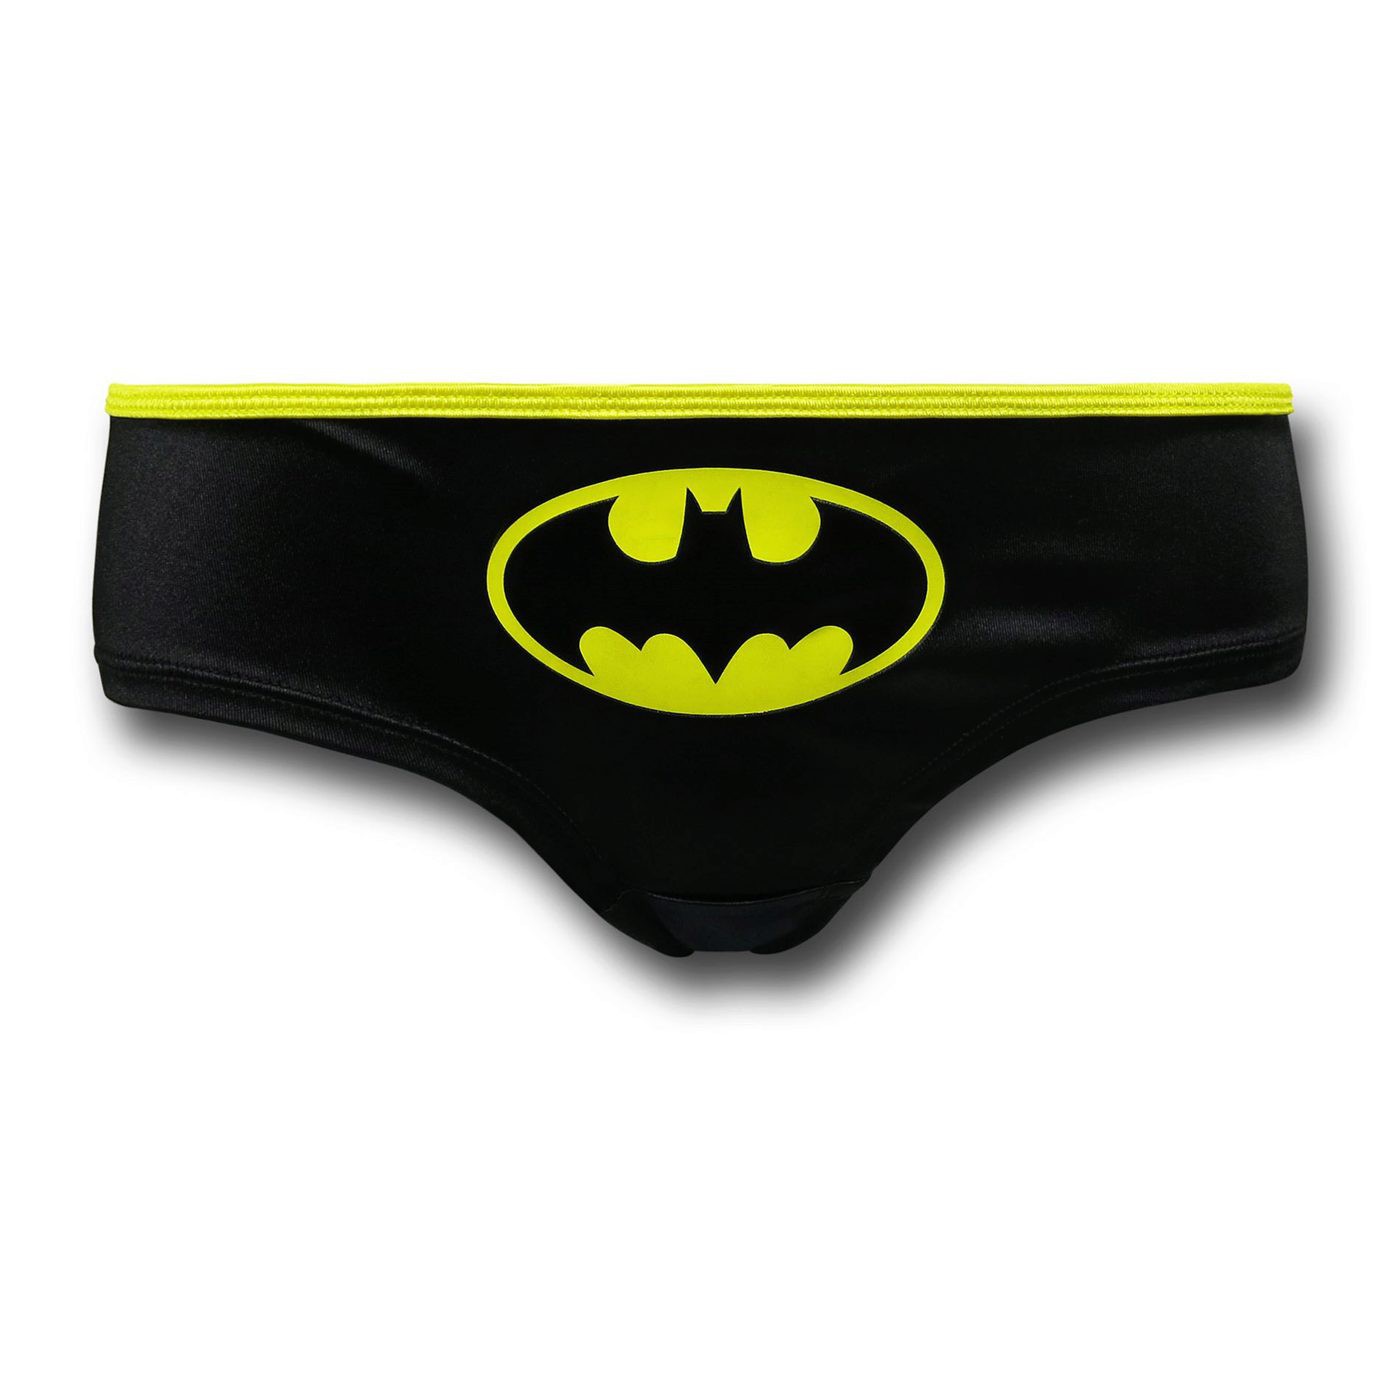 Batman Printed Corset & Panty Set